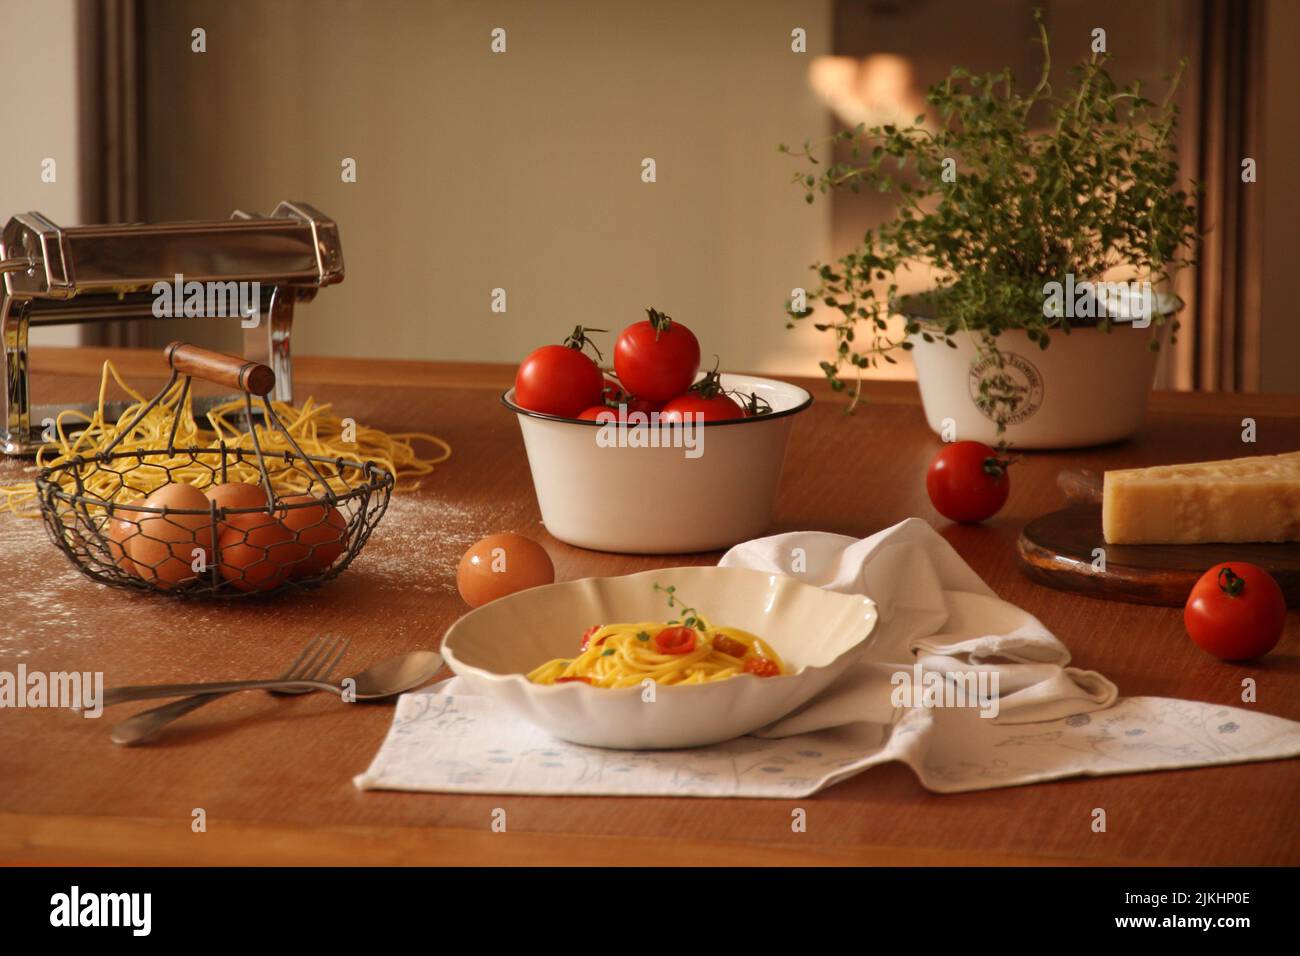 Stillleben eines hölzernen Küchentischs mit gekochter Pasta, rohen Eiern und Tomaten Stockfoto